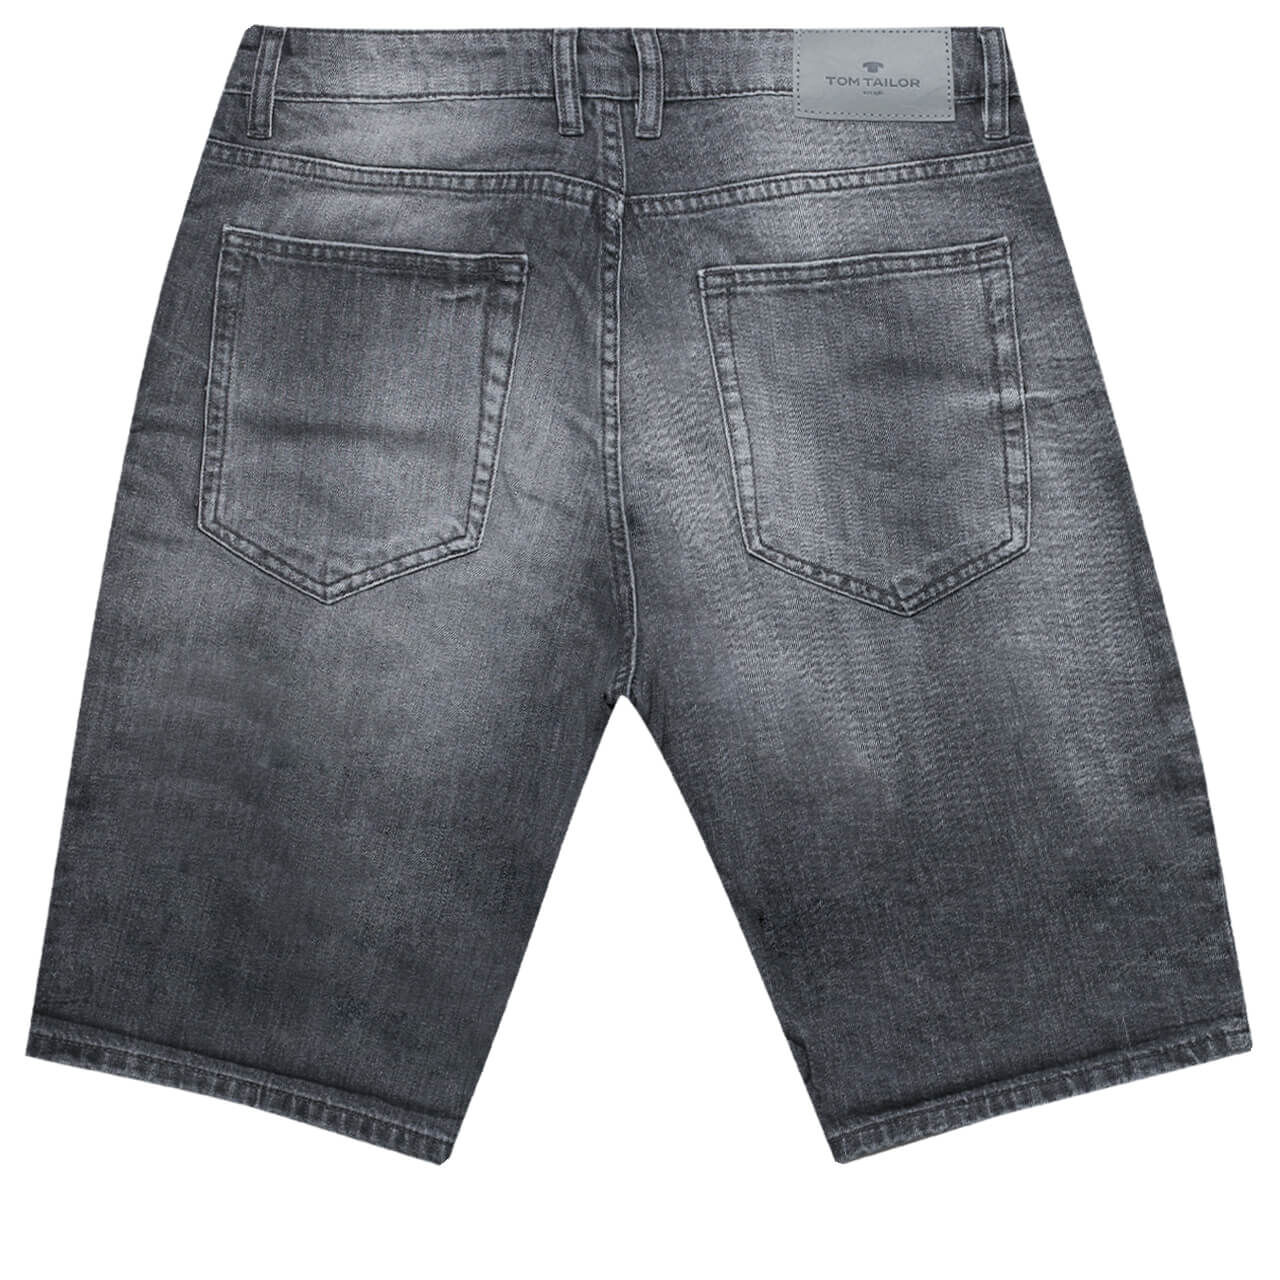 Tom Tailor Jeans Josh Bermuda für Herren in Grau angewaschen, FarbNr.: 10212